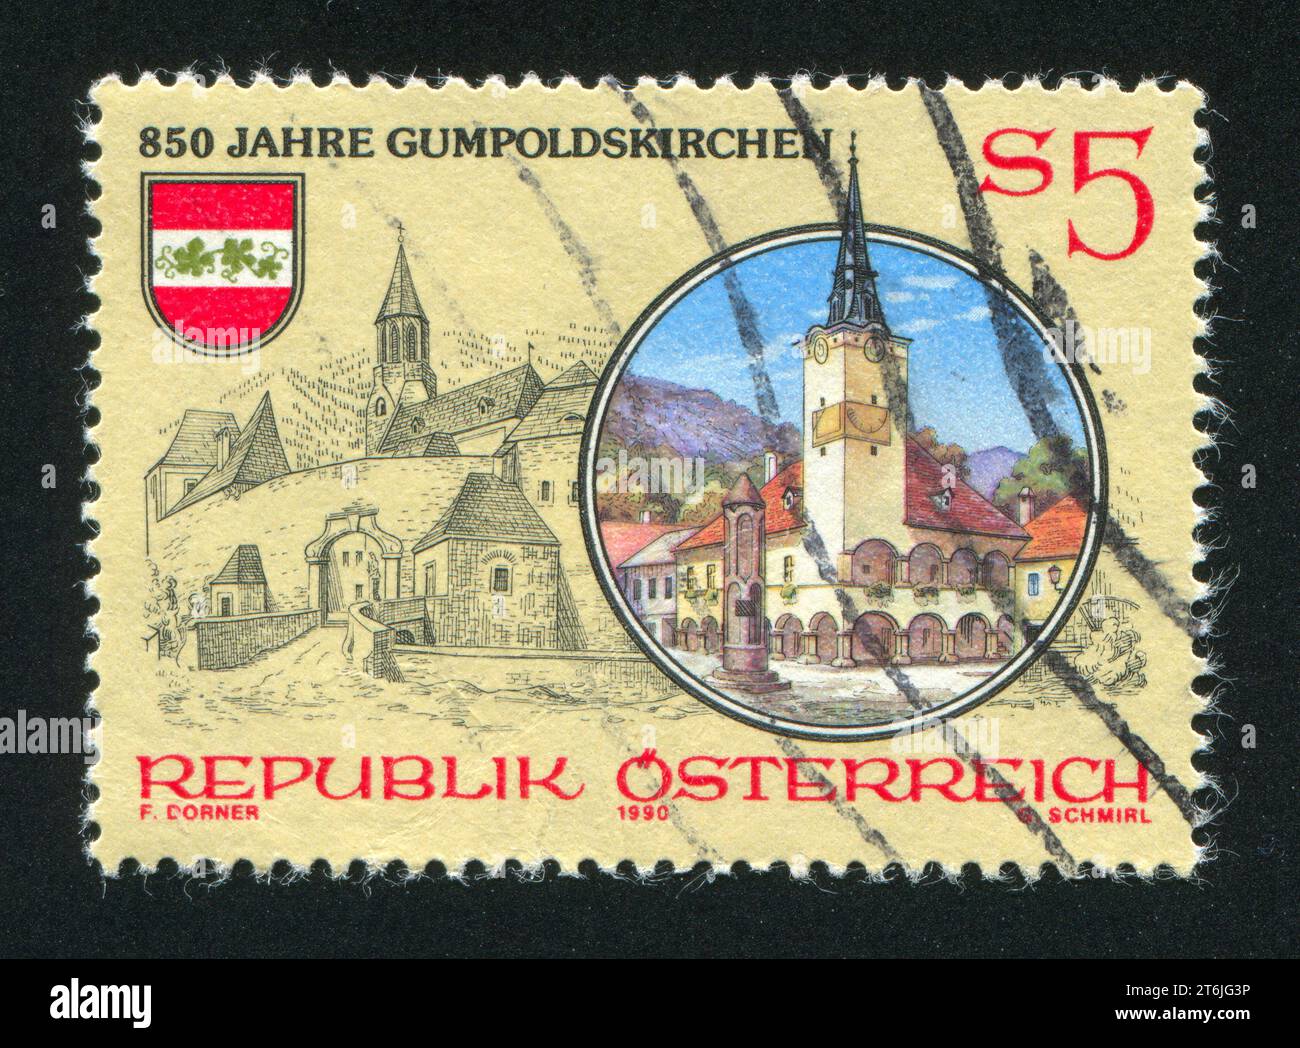 ÖSTERREICH - UM 1990: Briefmarke gedruckt von Österreich, zeigt Gumpoldskirchen, um 1990 Stockfoto